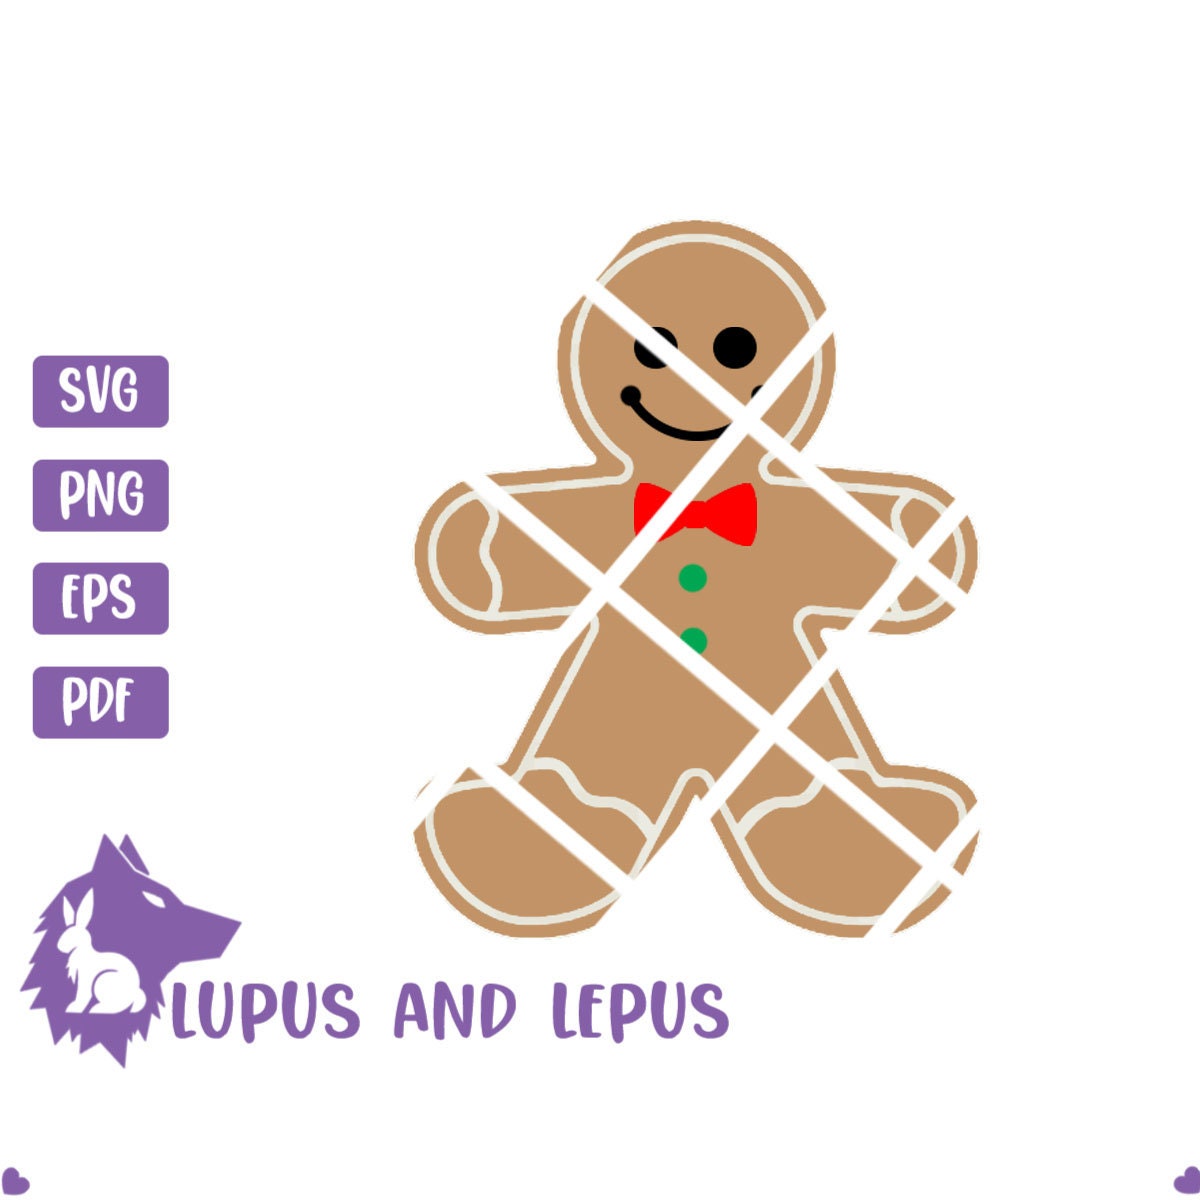 Digital File - Gingerbread Man SVG File, Christmas SVG, gingerbread svg, ginger bread svg, holiday svg, cricut (eps, svg, pdf, png, jpeg)